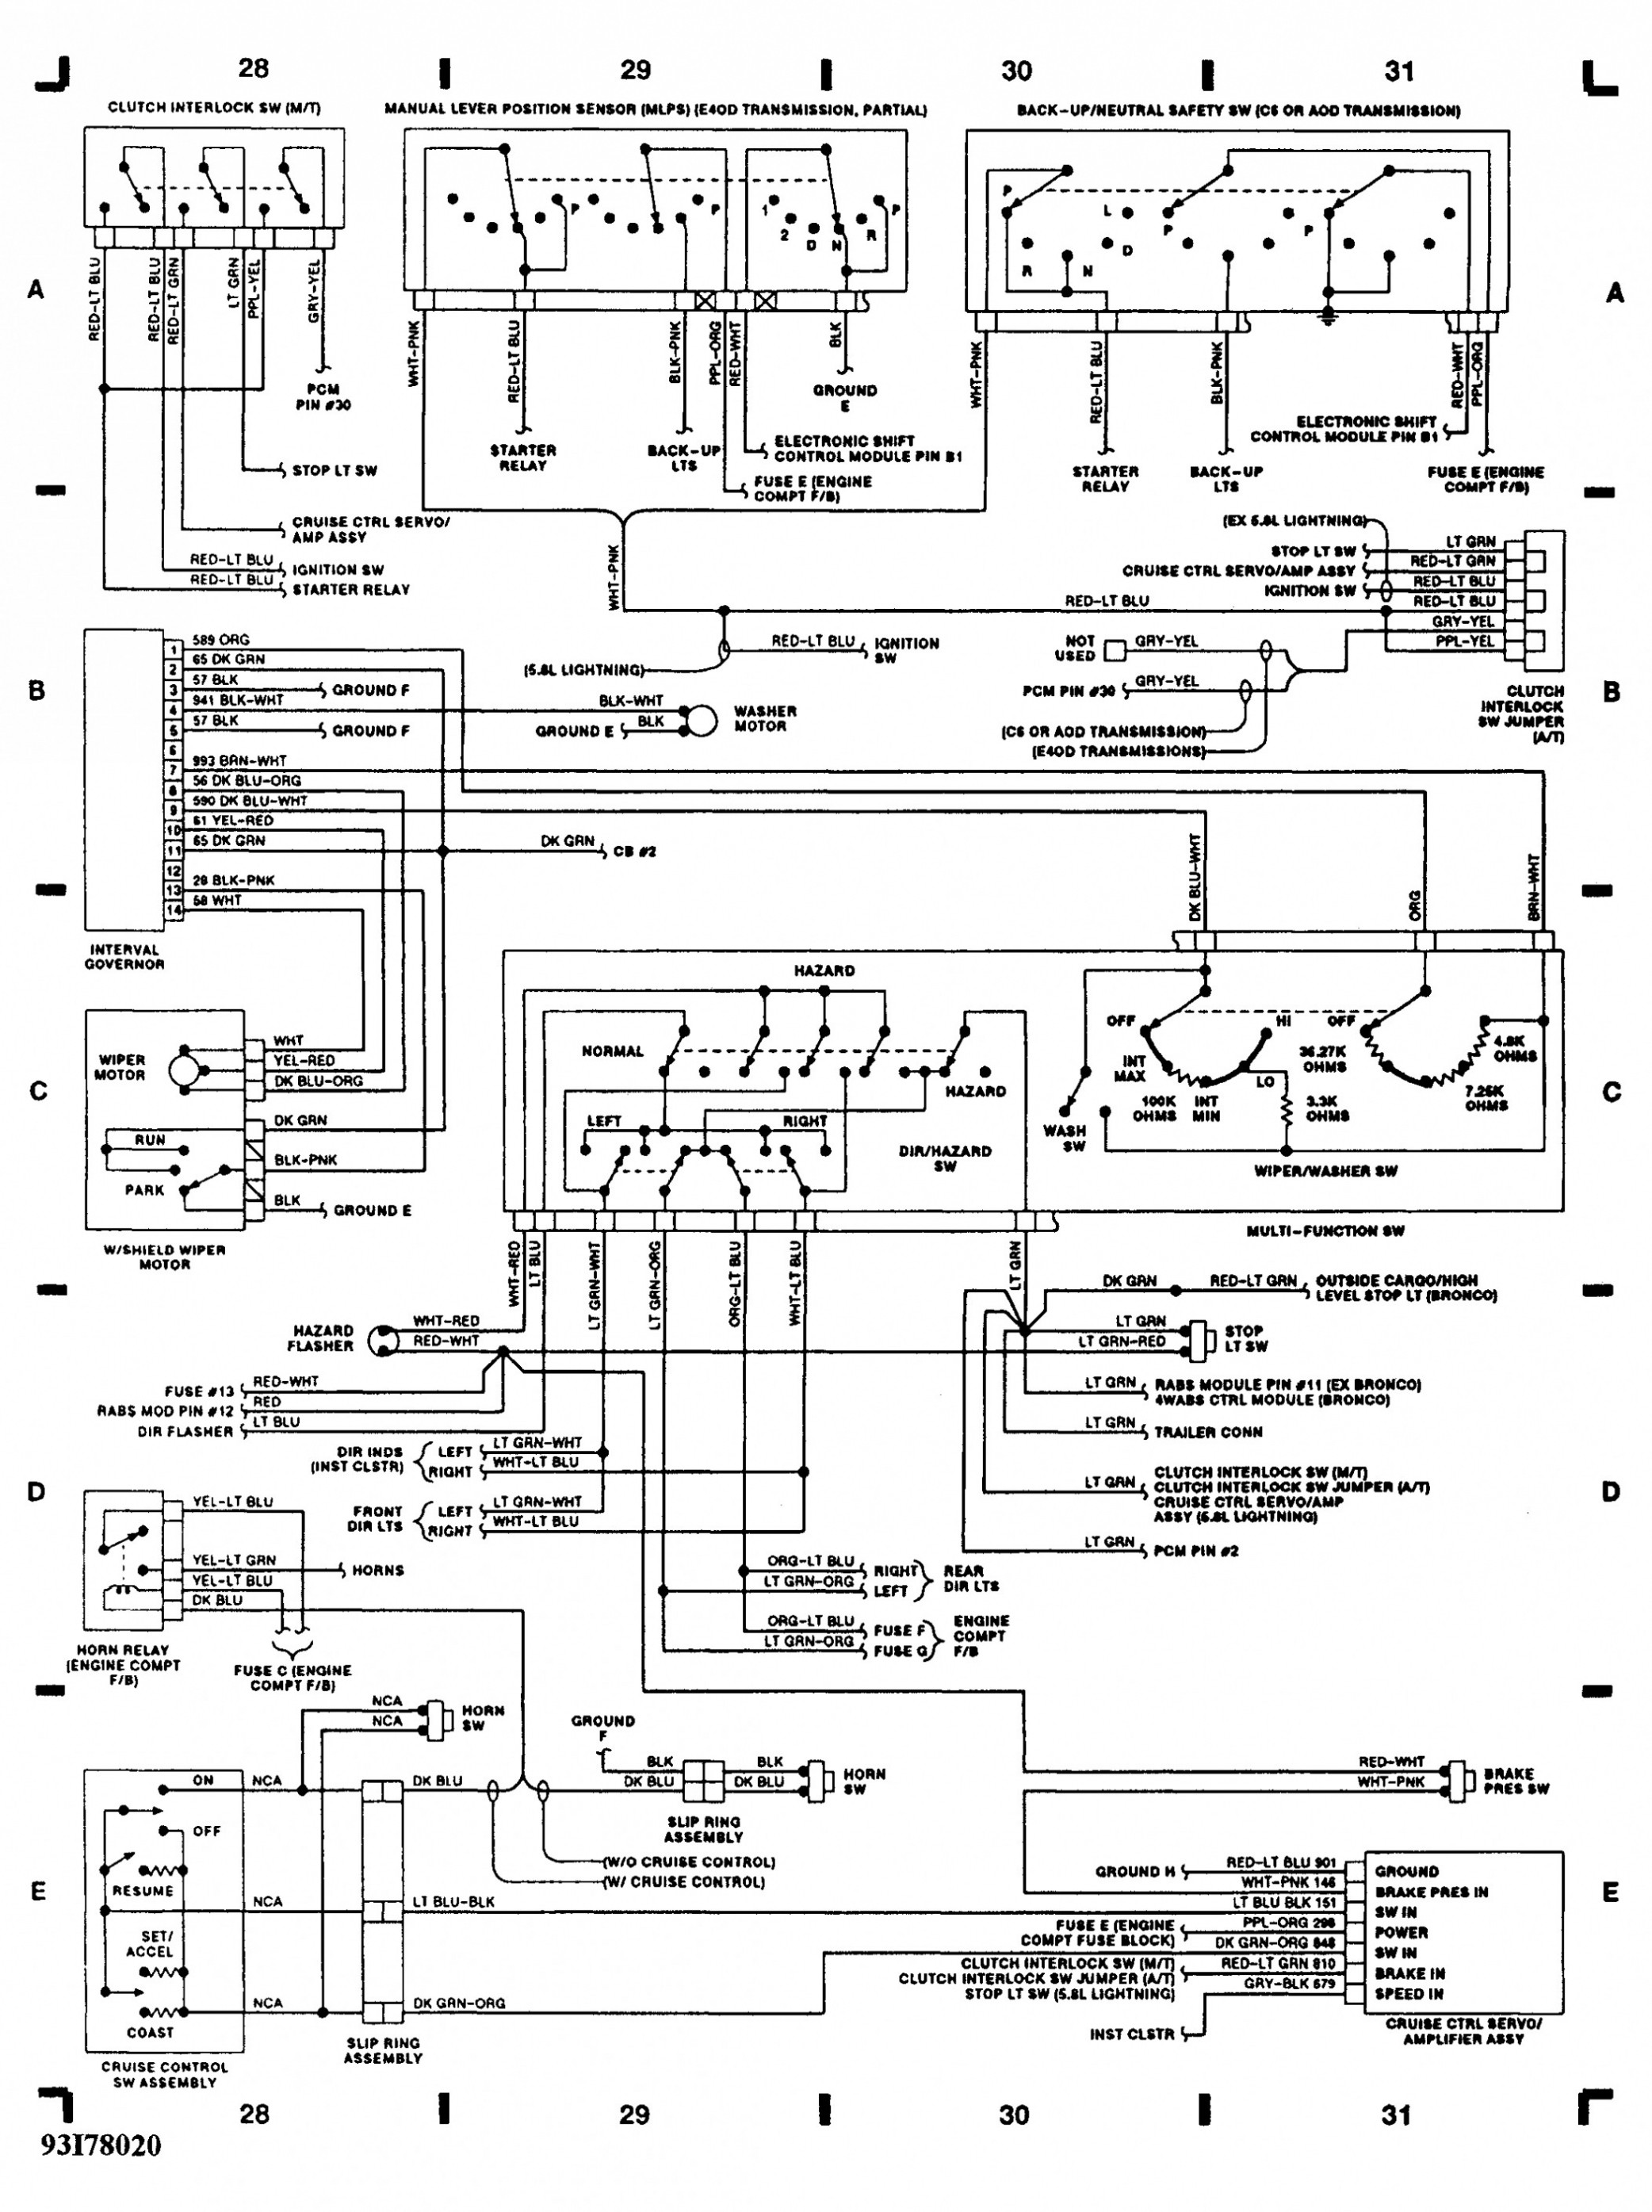 Wiring Diagram PDF: 2003 Ford F 150 Fuse Relay Diagram